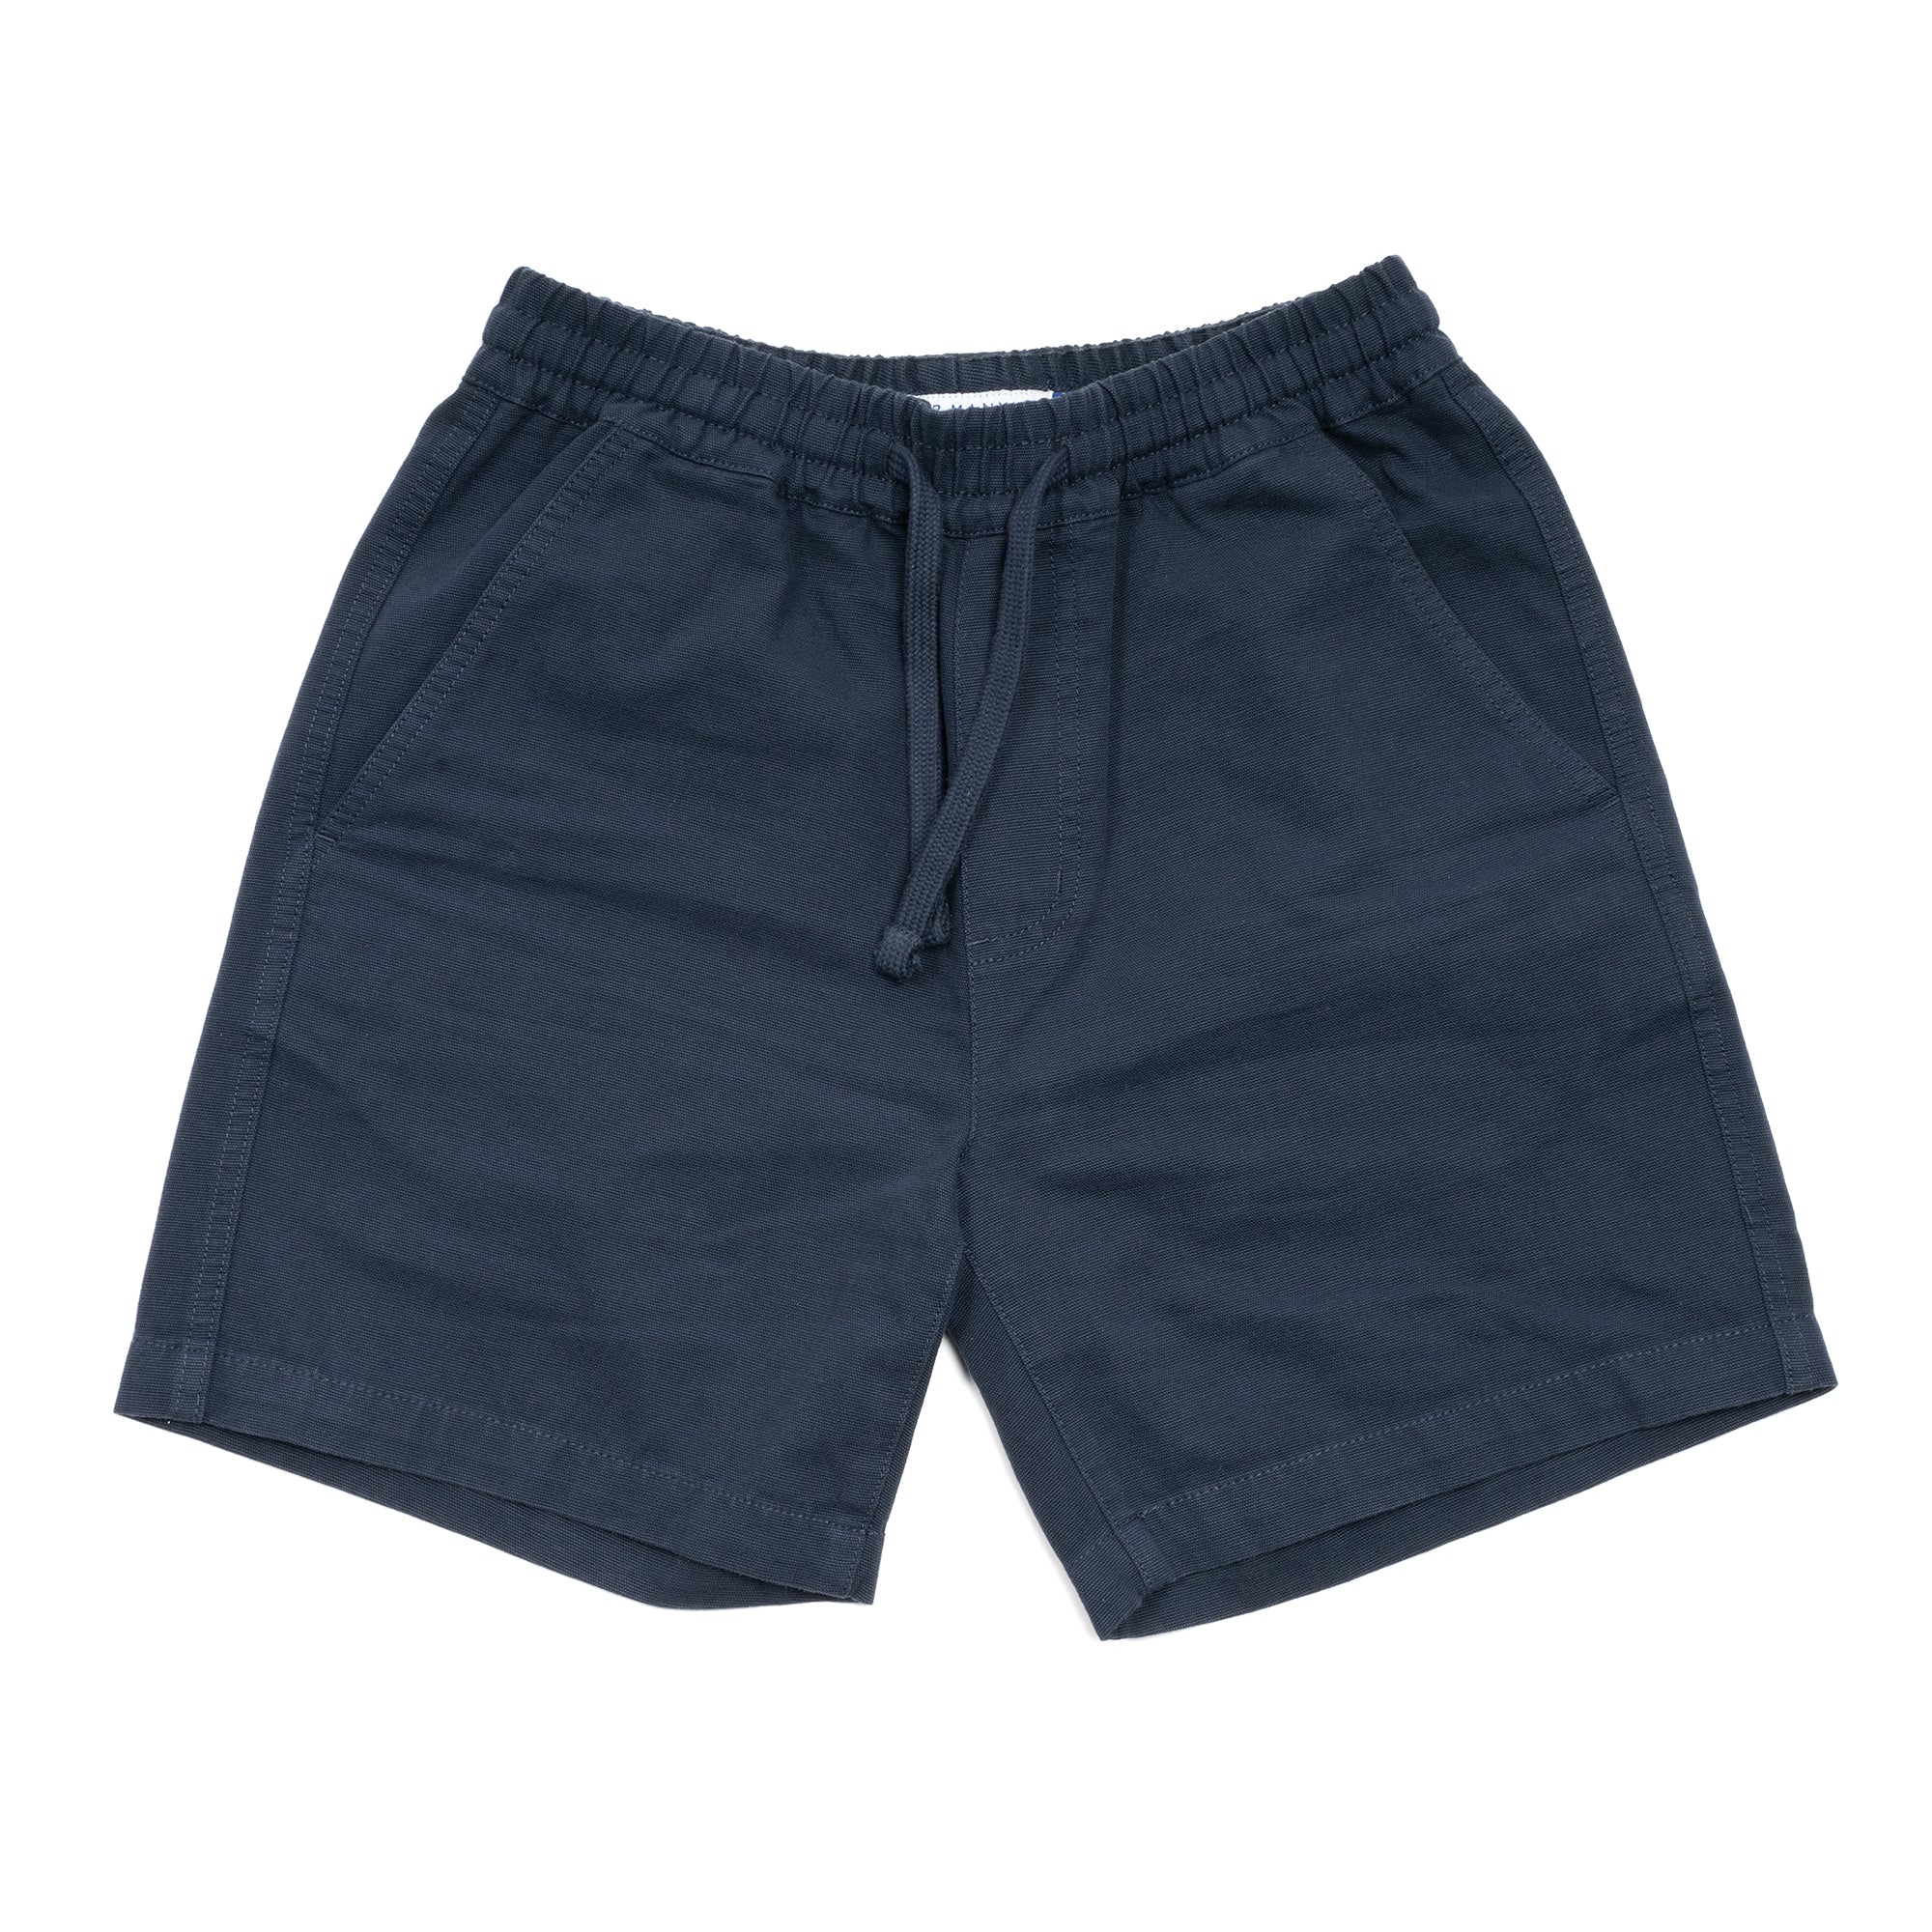 Dock Shorts - Navy